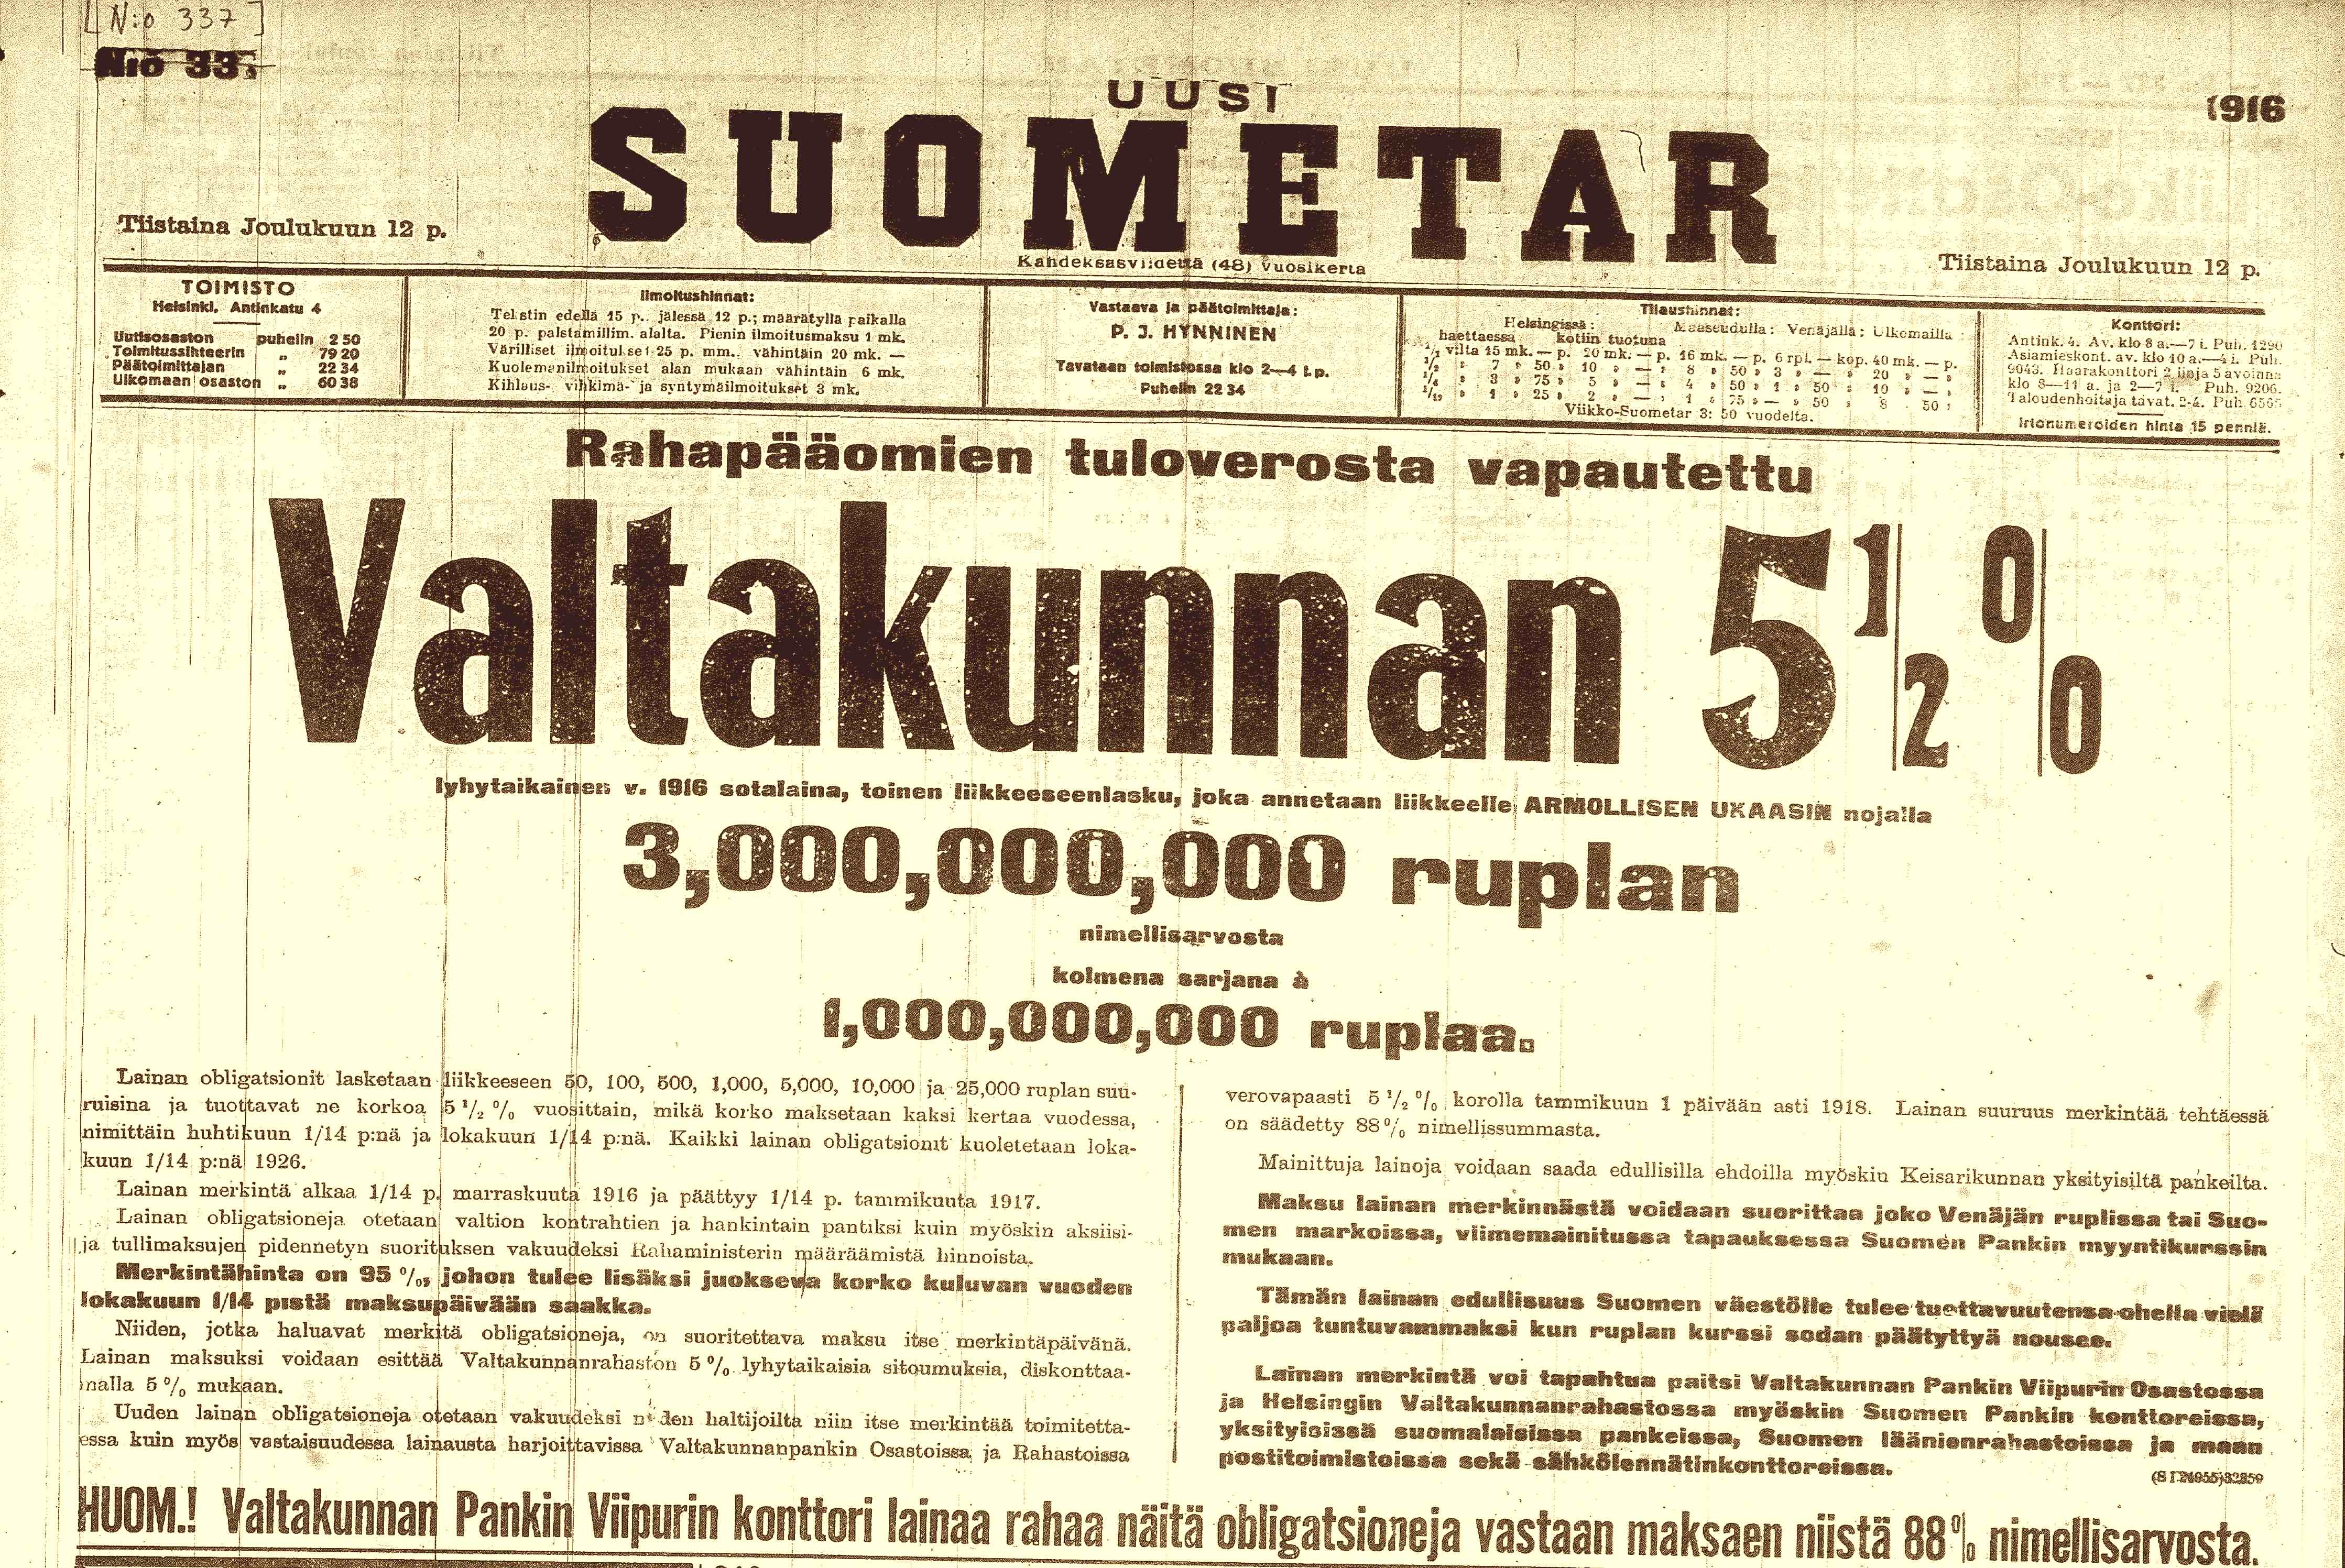 Venäjän sotaobligaatioiden myynti-ilmoitus Uudessa Suomettaressa joulukuussa 1916.